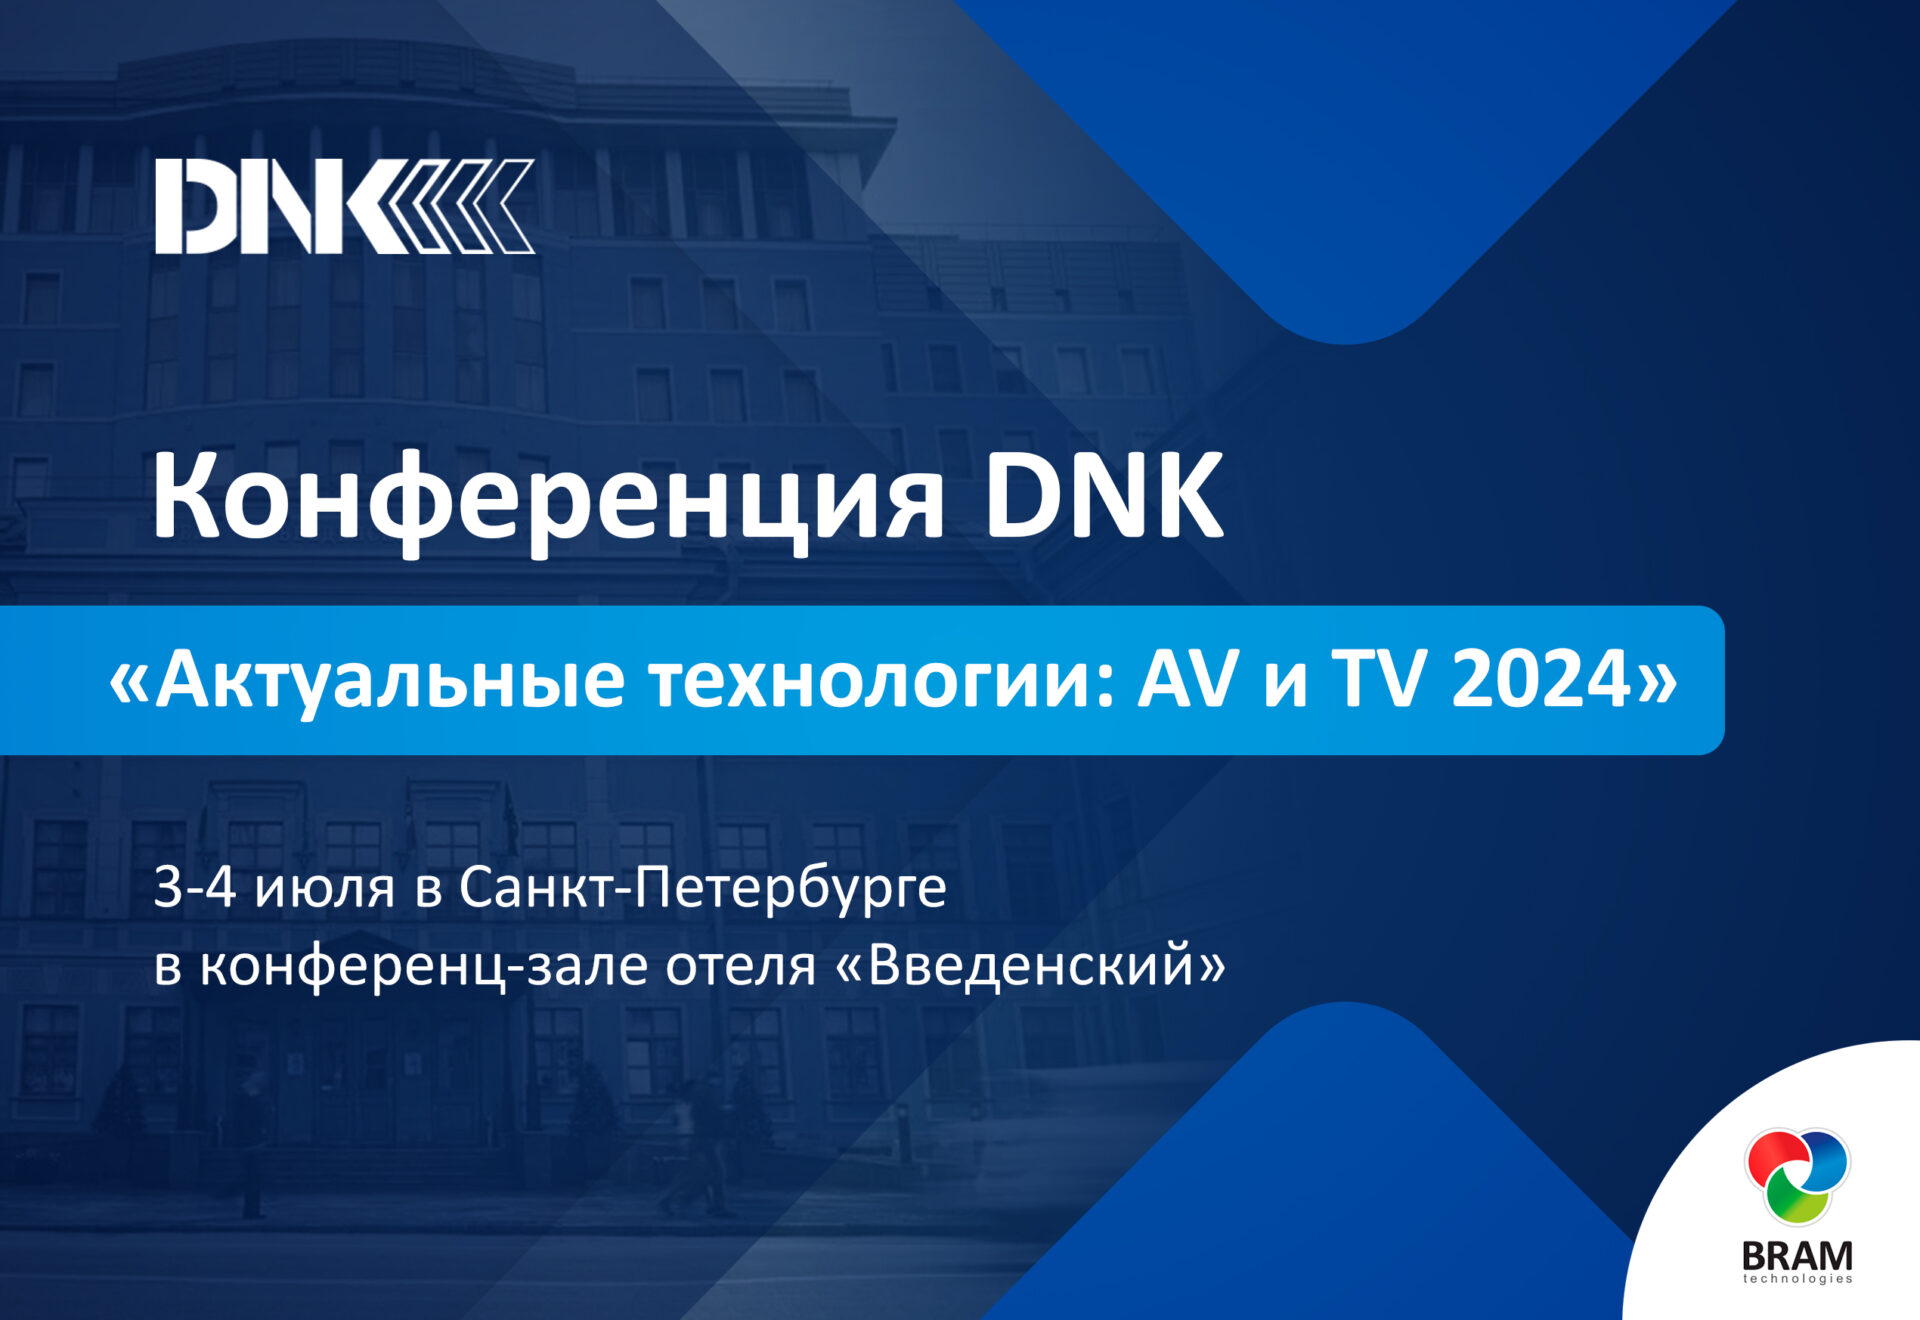 BRAM Technologies в июле примет участие в мероприятии компании DNK в Санкт-Петербурге.